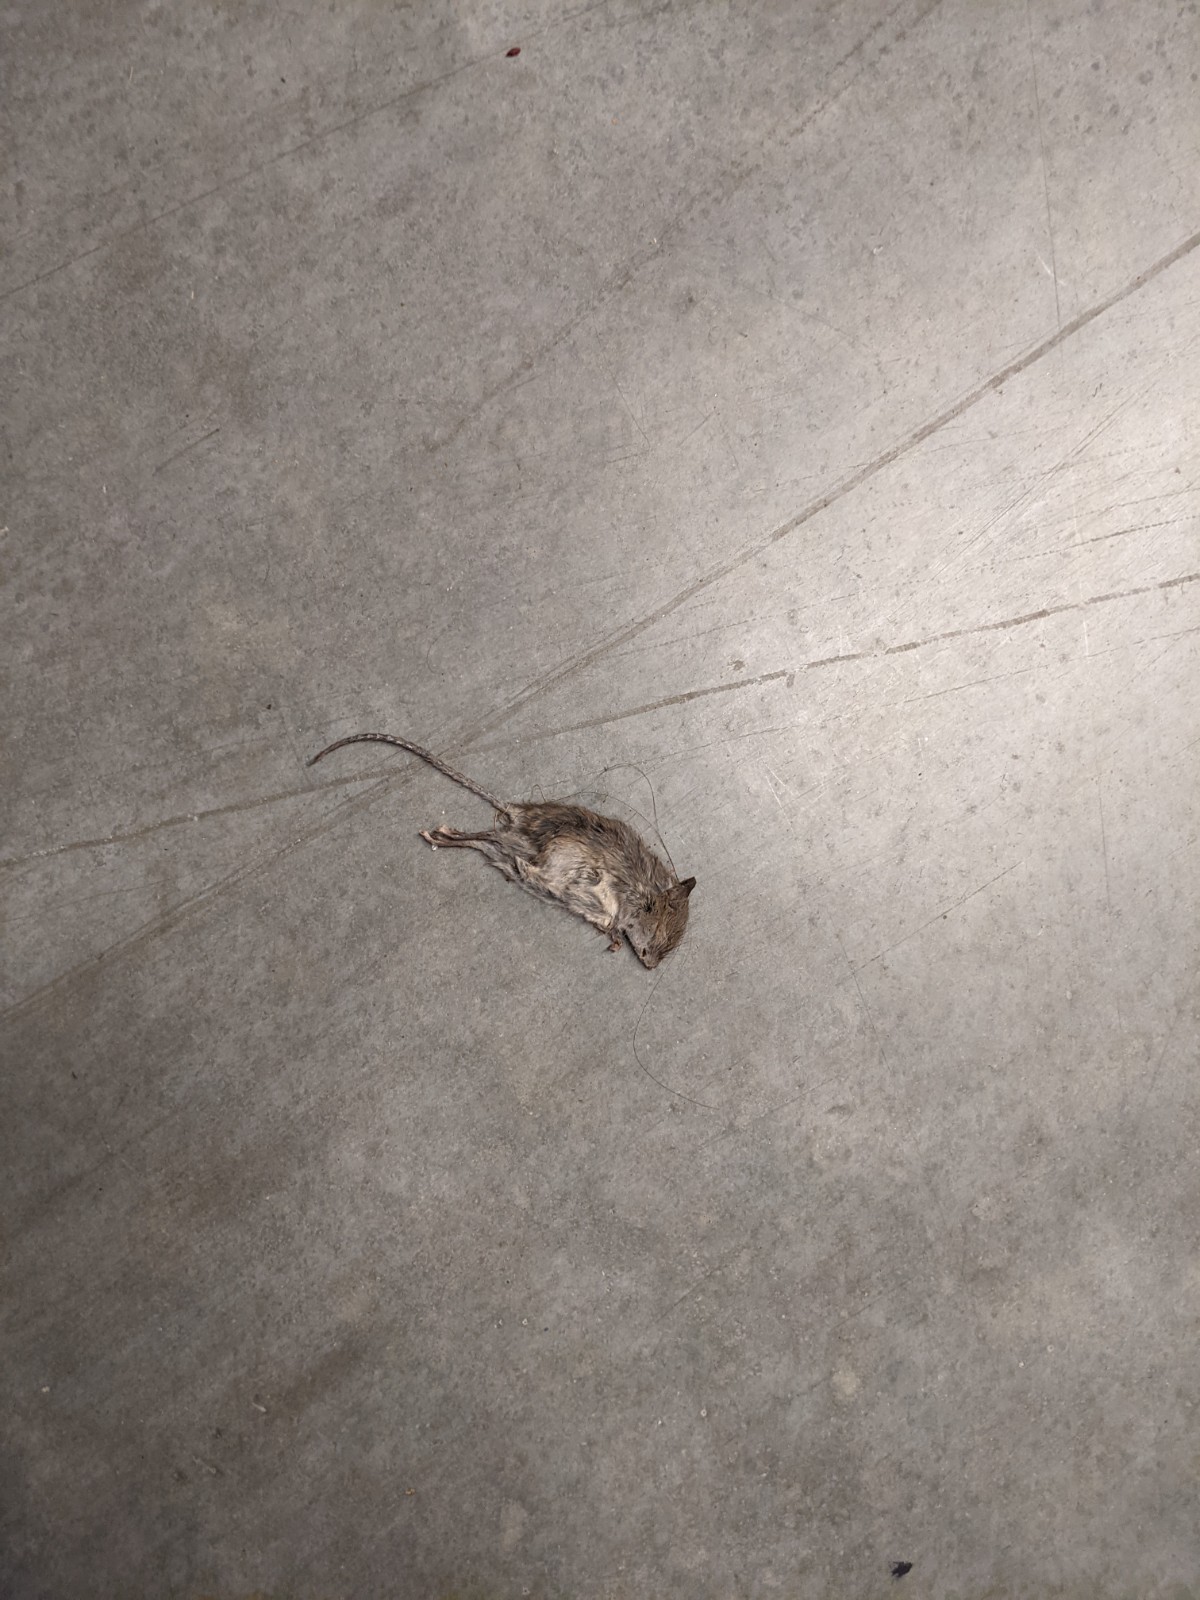 Dead rat I found in my storage unit. 